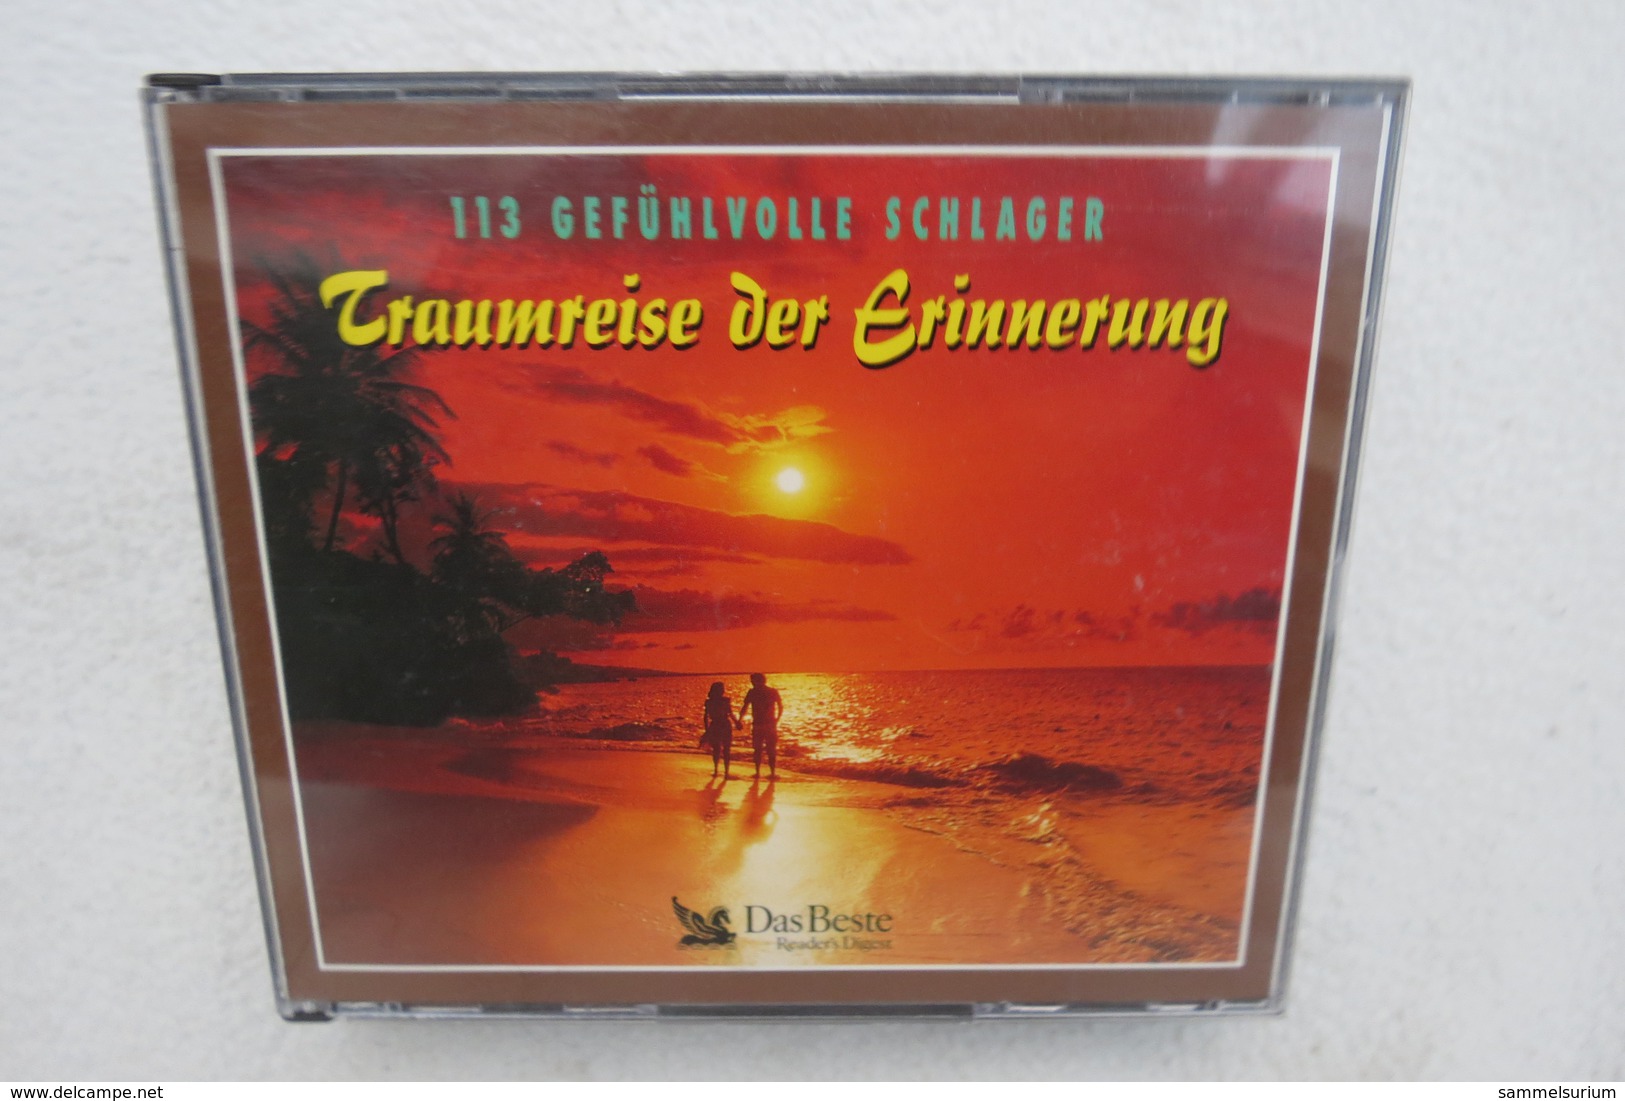 3 CDs "Traumreise Der Erinnerung" 113 Gefühlvolle Schlager - Other - German Music